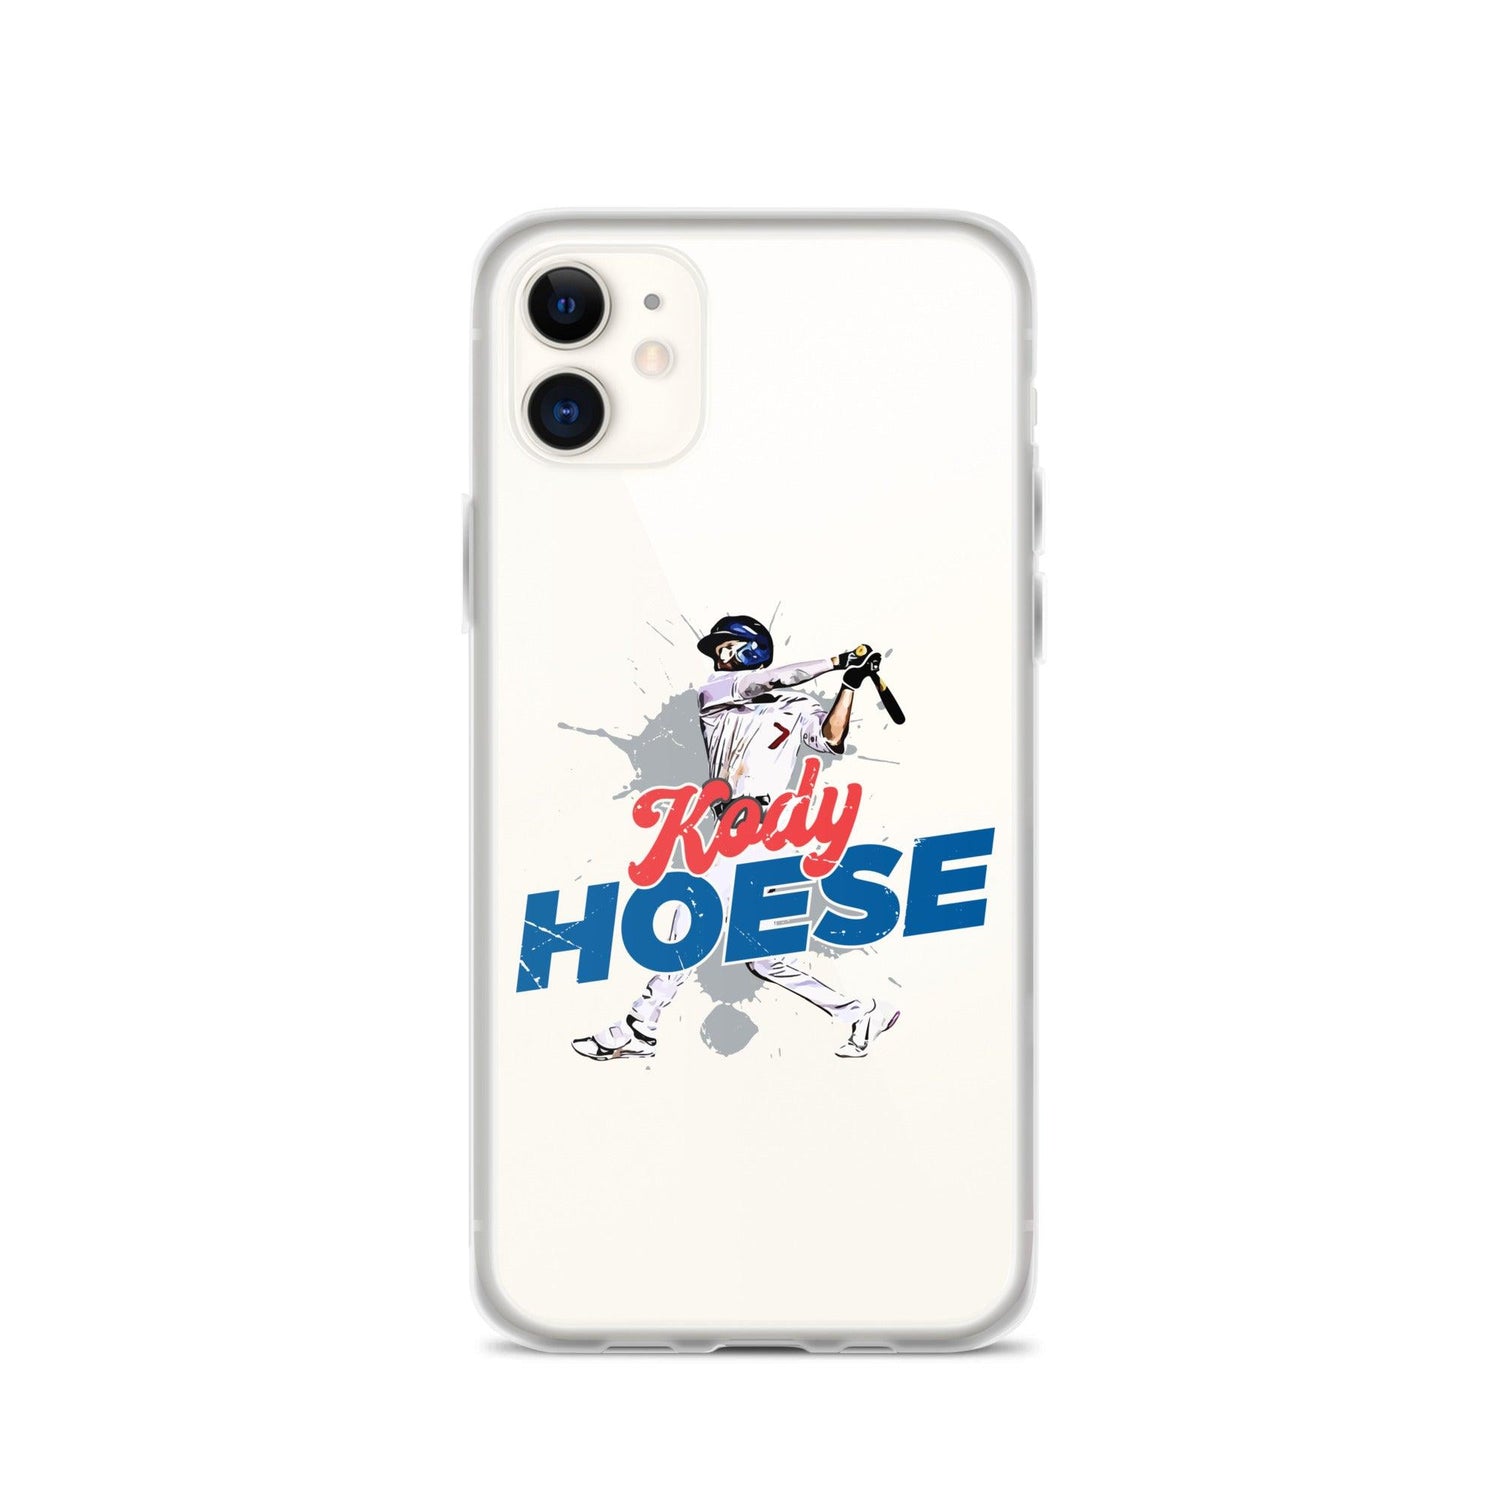 Kody Hoese "Power" iPhone Case - Fan Arch